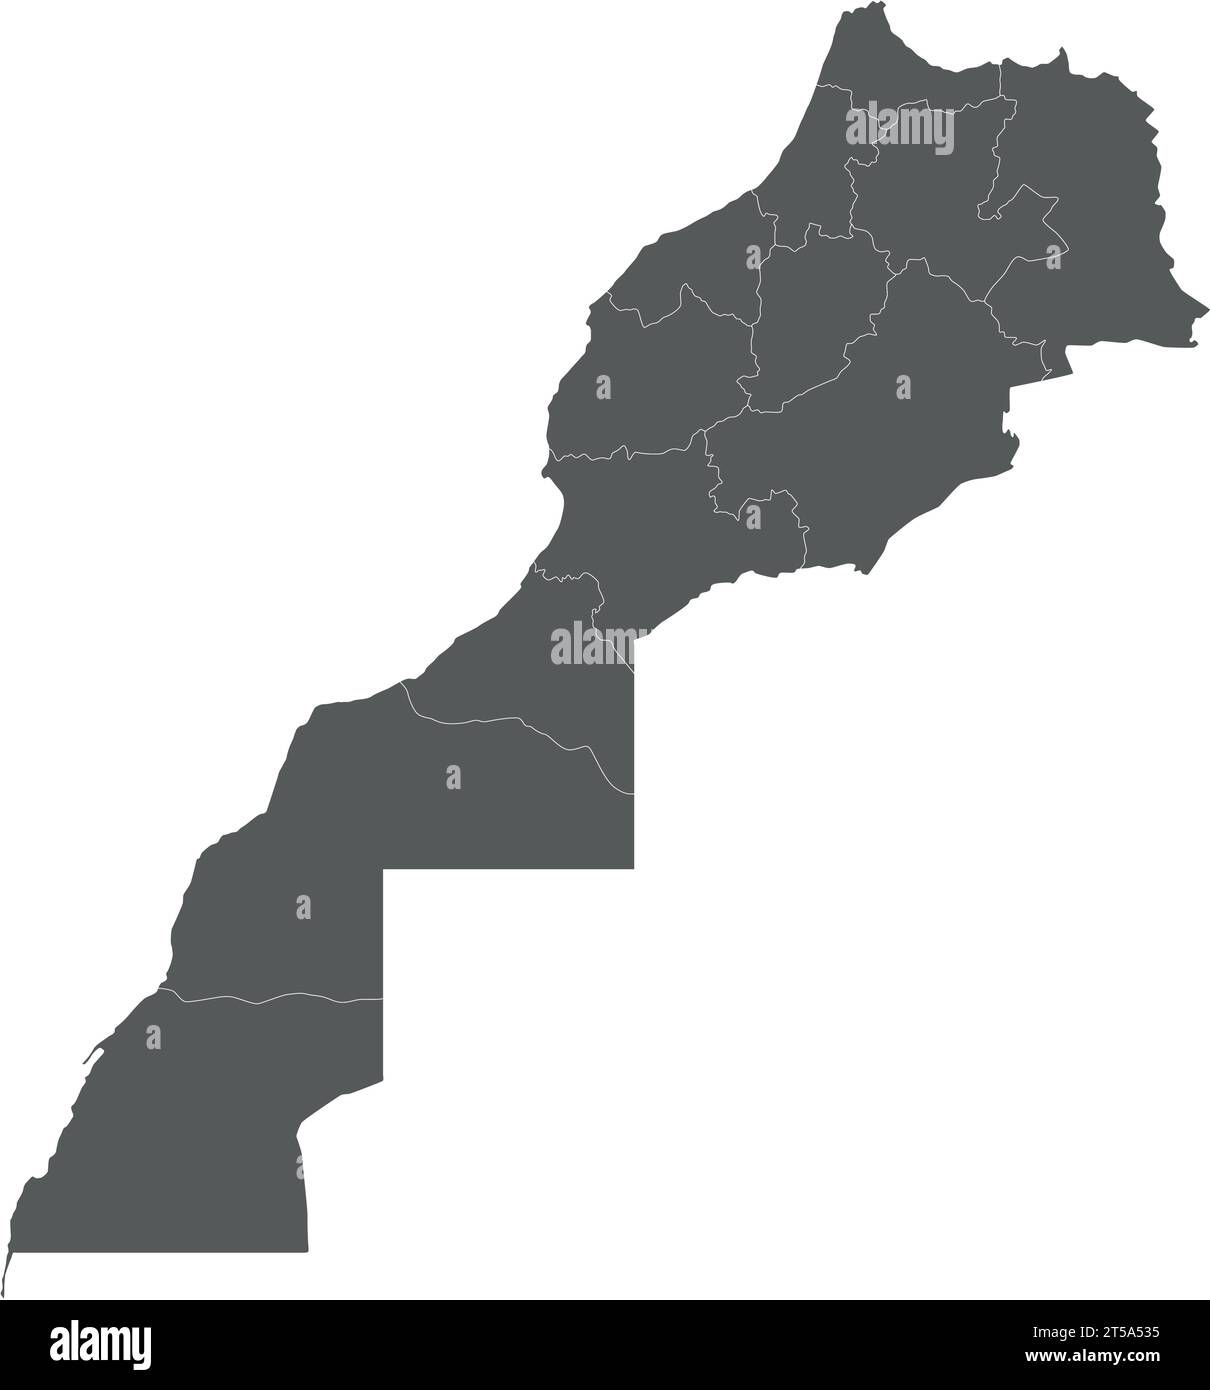 Carte vierge vectorielle du Maroc avec les régions et les divisions administratives. Calques modifiables et clairement étiquetés. Illustration de Vecteur